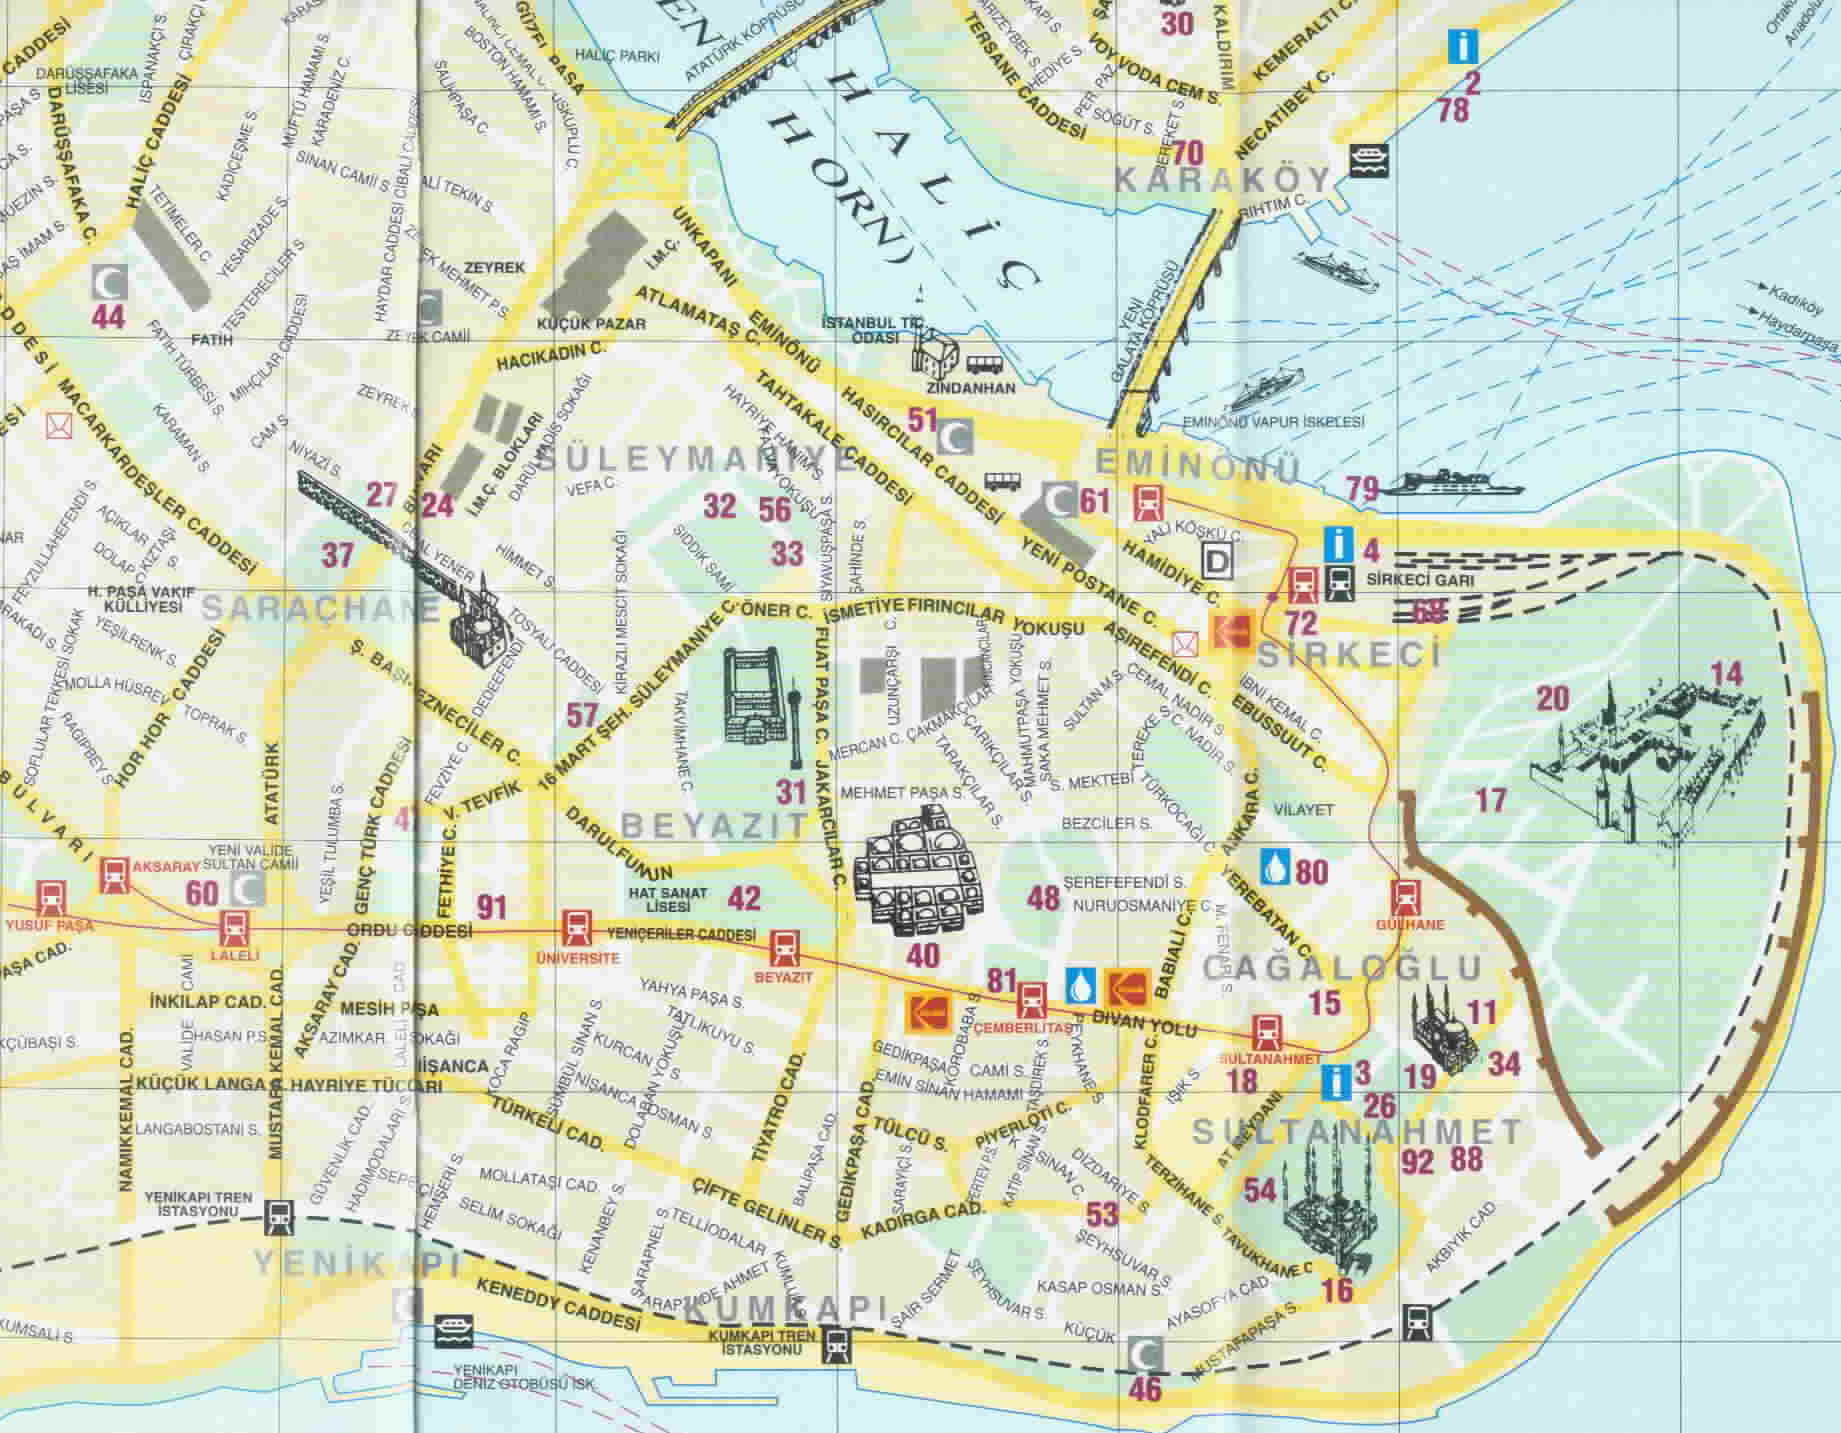 Центр стамбула на карте. Карта Стамбула на русском языке с достопримечательностями. Султанахмет на карте Стамбула. Район Султанахмет в Стамбуле на карте. Истанбул Турция на карте.